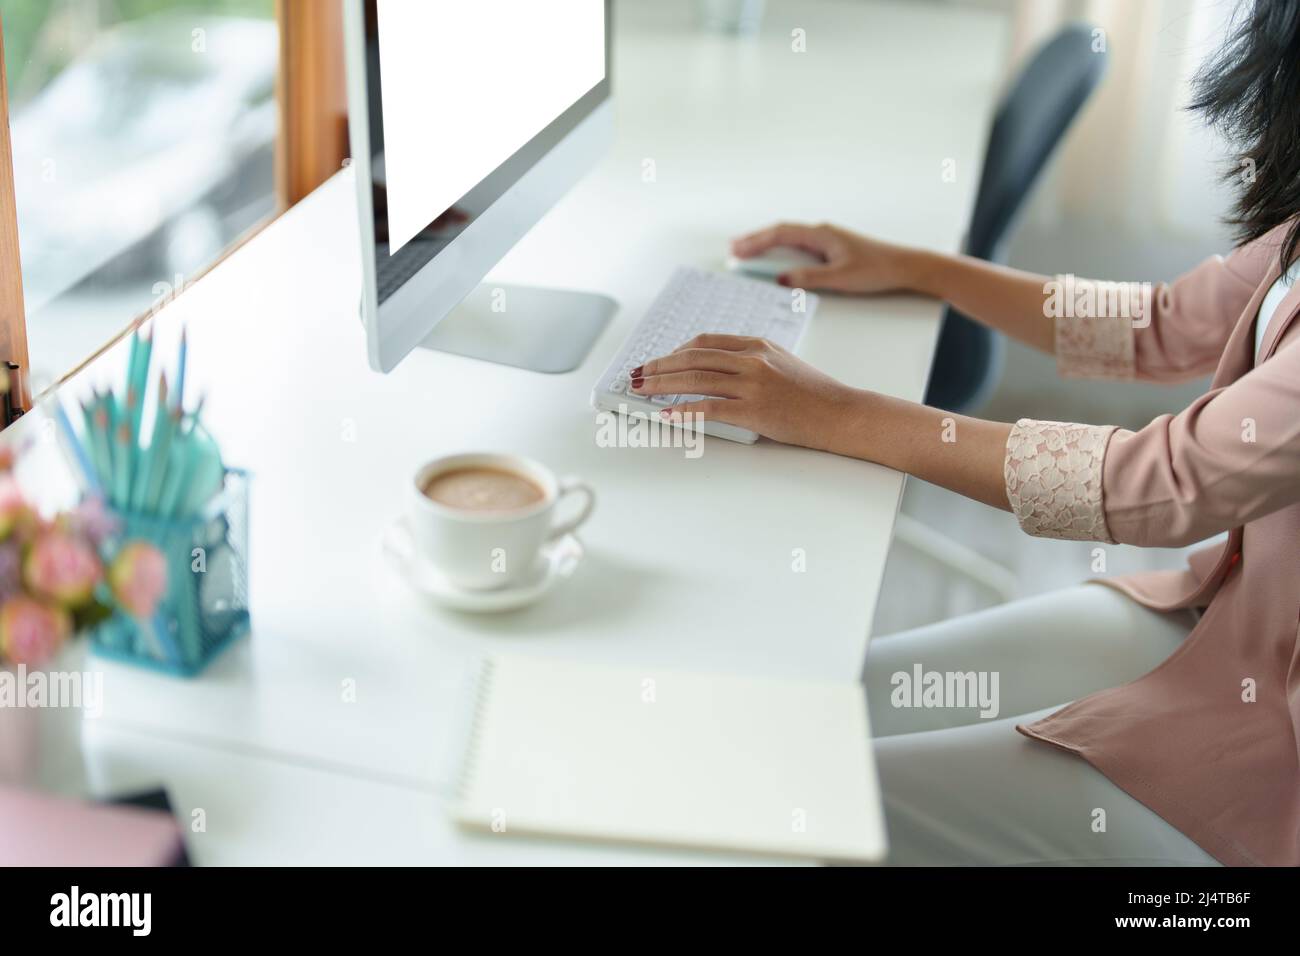 Einkaufen, Treffen, Informationssuche, asiatische Frau mit einem weißen Bildschirm Laptop Mockup kann Text, Zeichen oder Bilder einfügen. Stockfoto